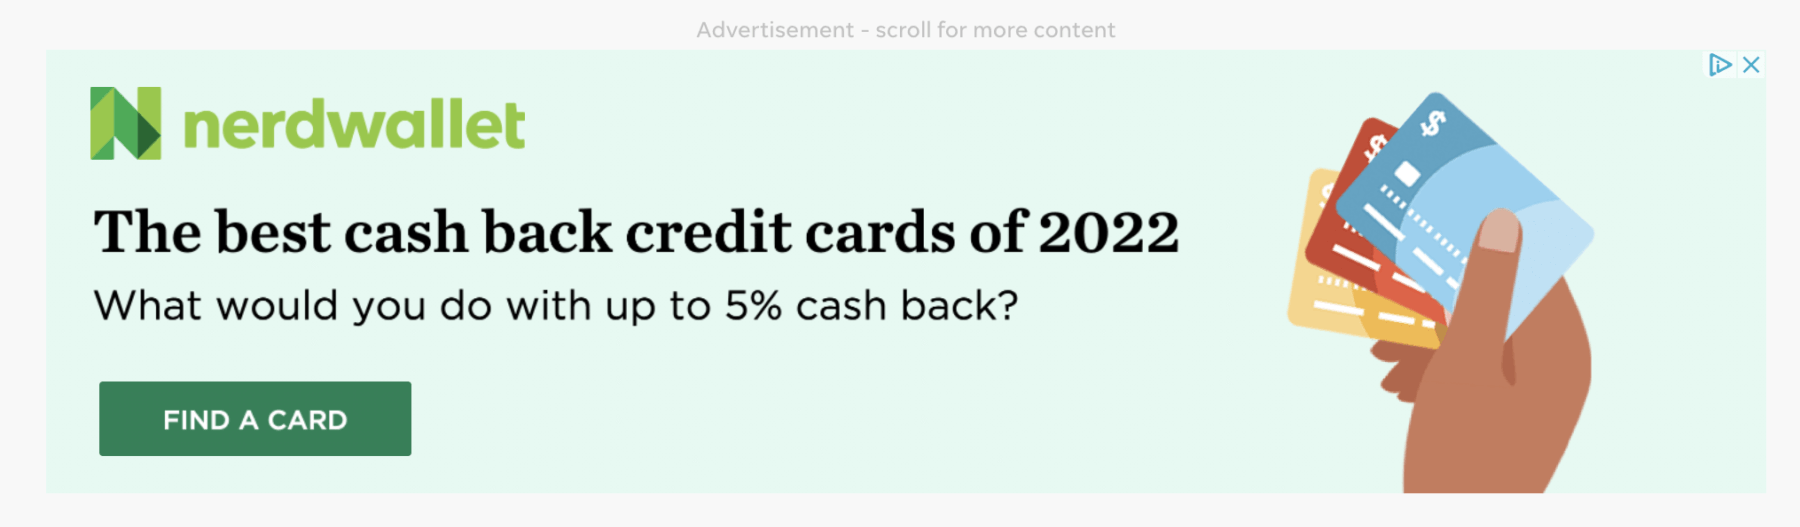 NerdWallet cash back credit cards retargeting ad